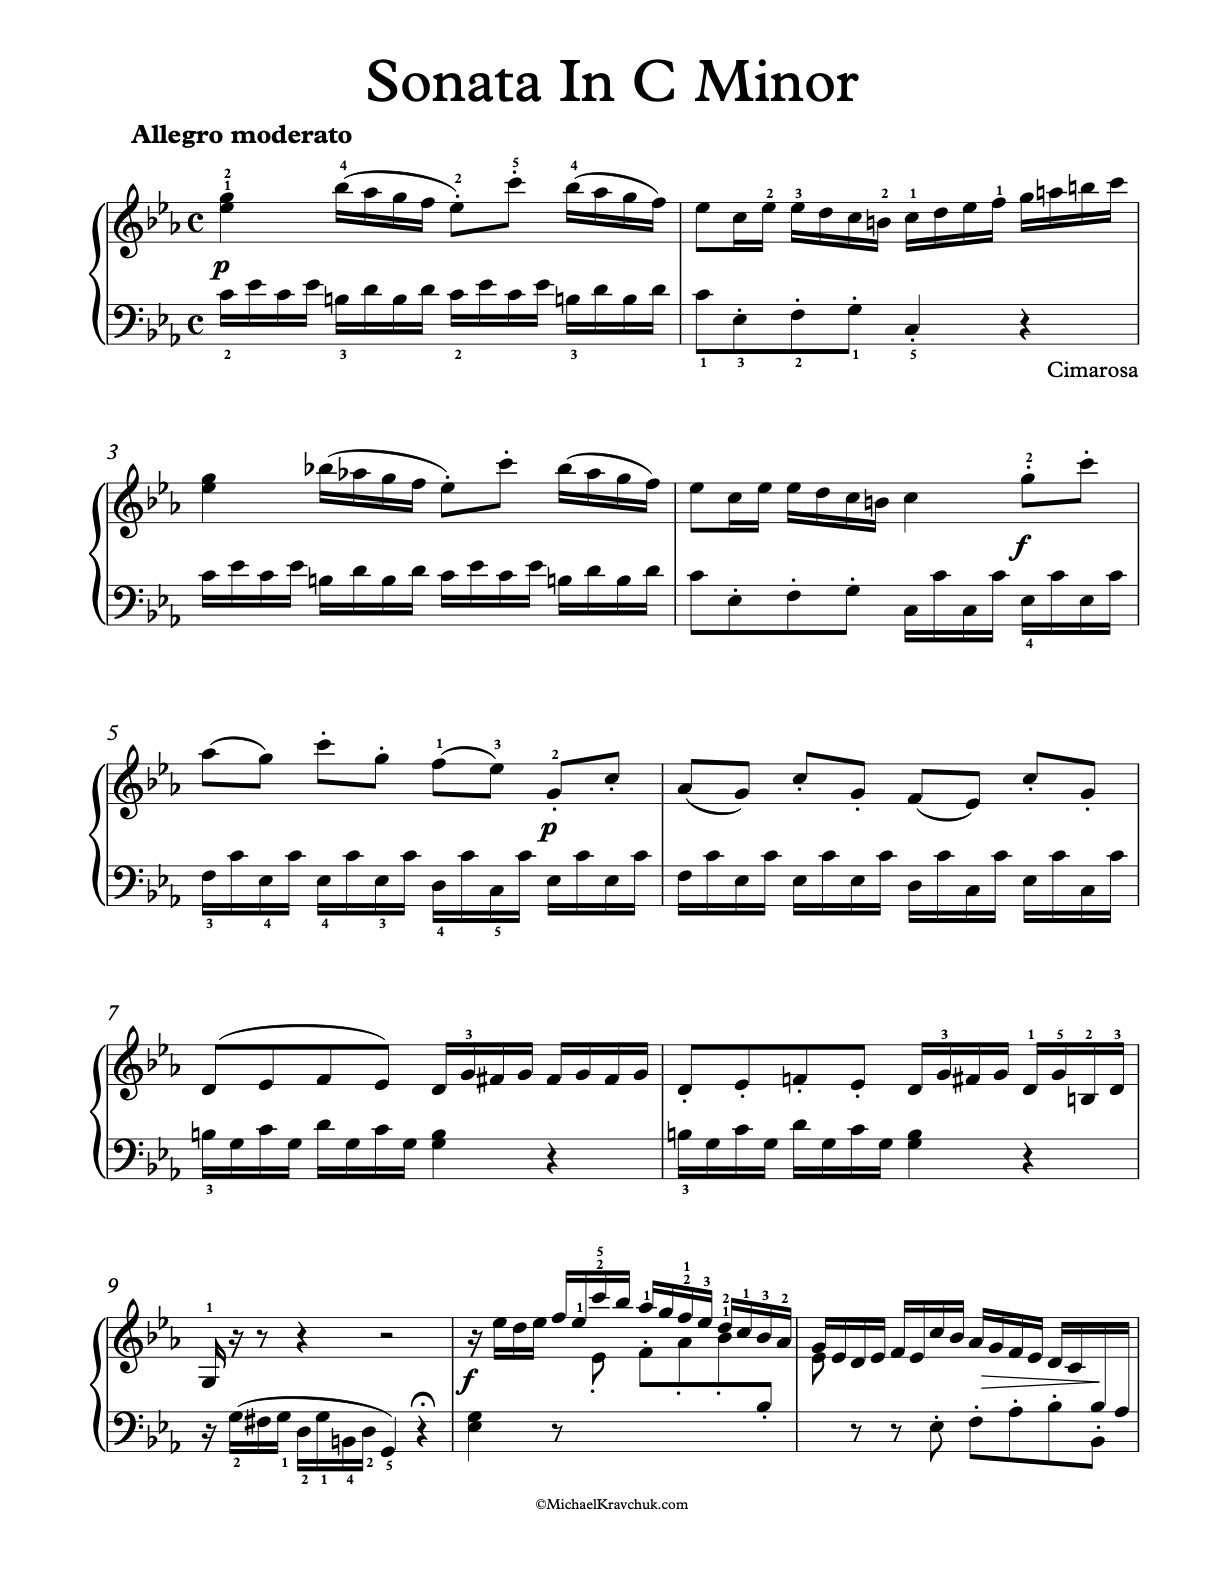 Sonata in C Minor Piano Sheet Music